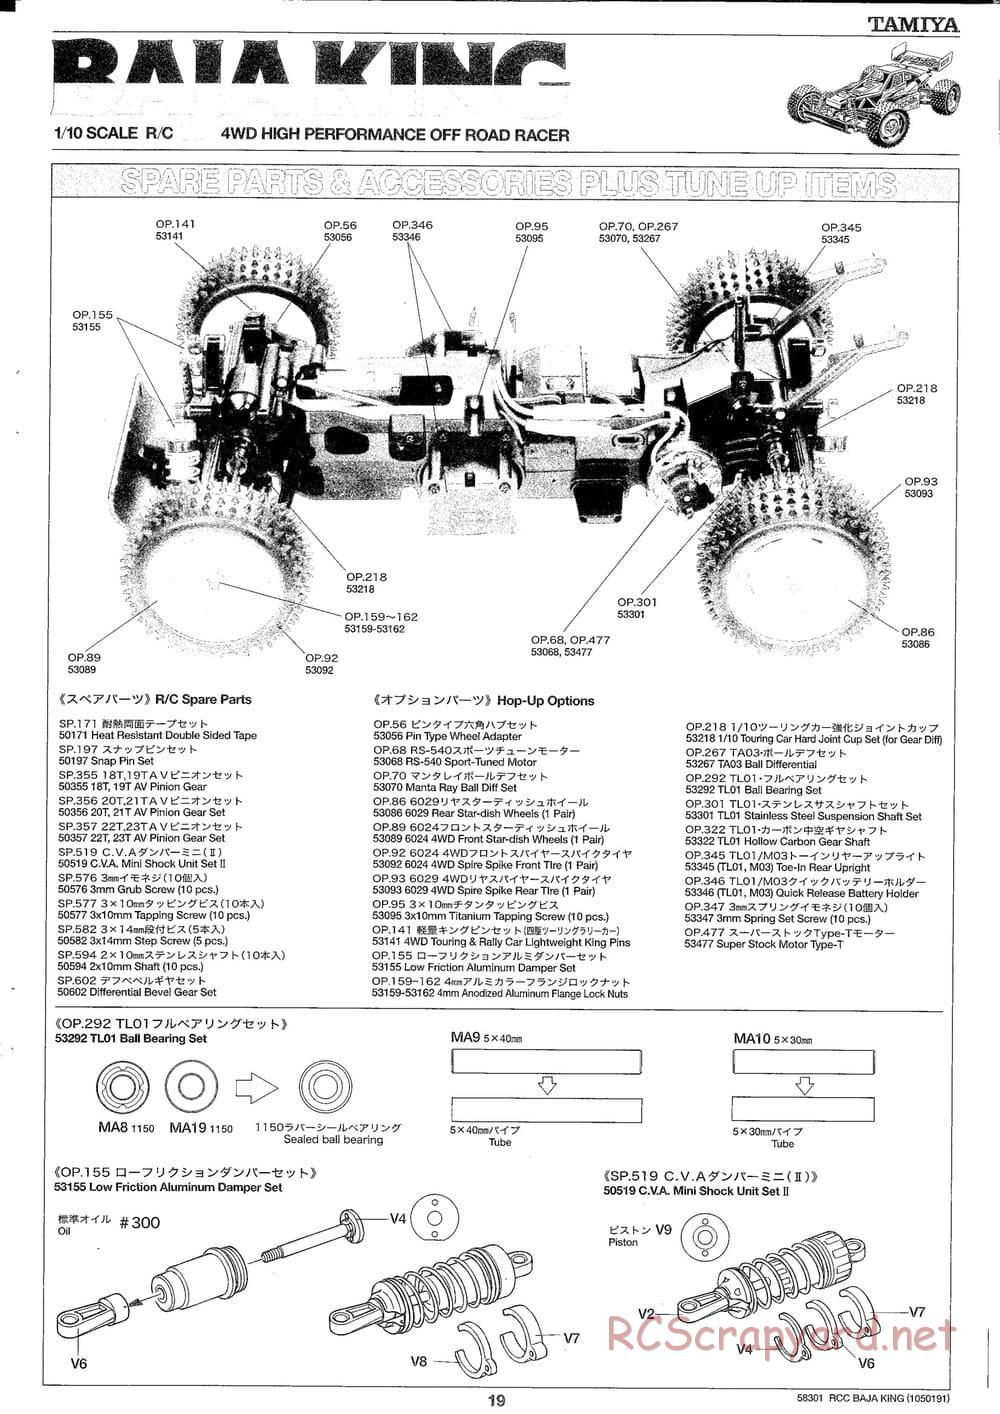 Tamiya - Baja King - TL-01B Chassis - Manual - Page 19